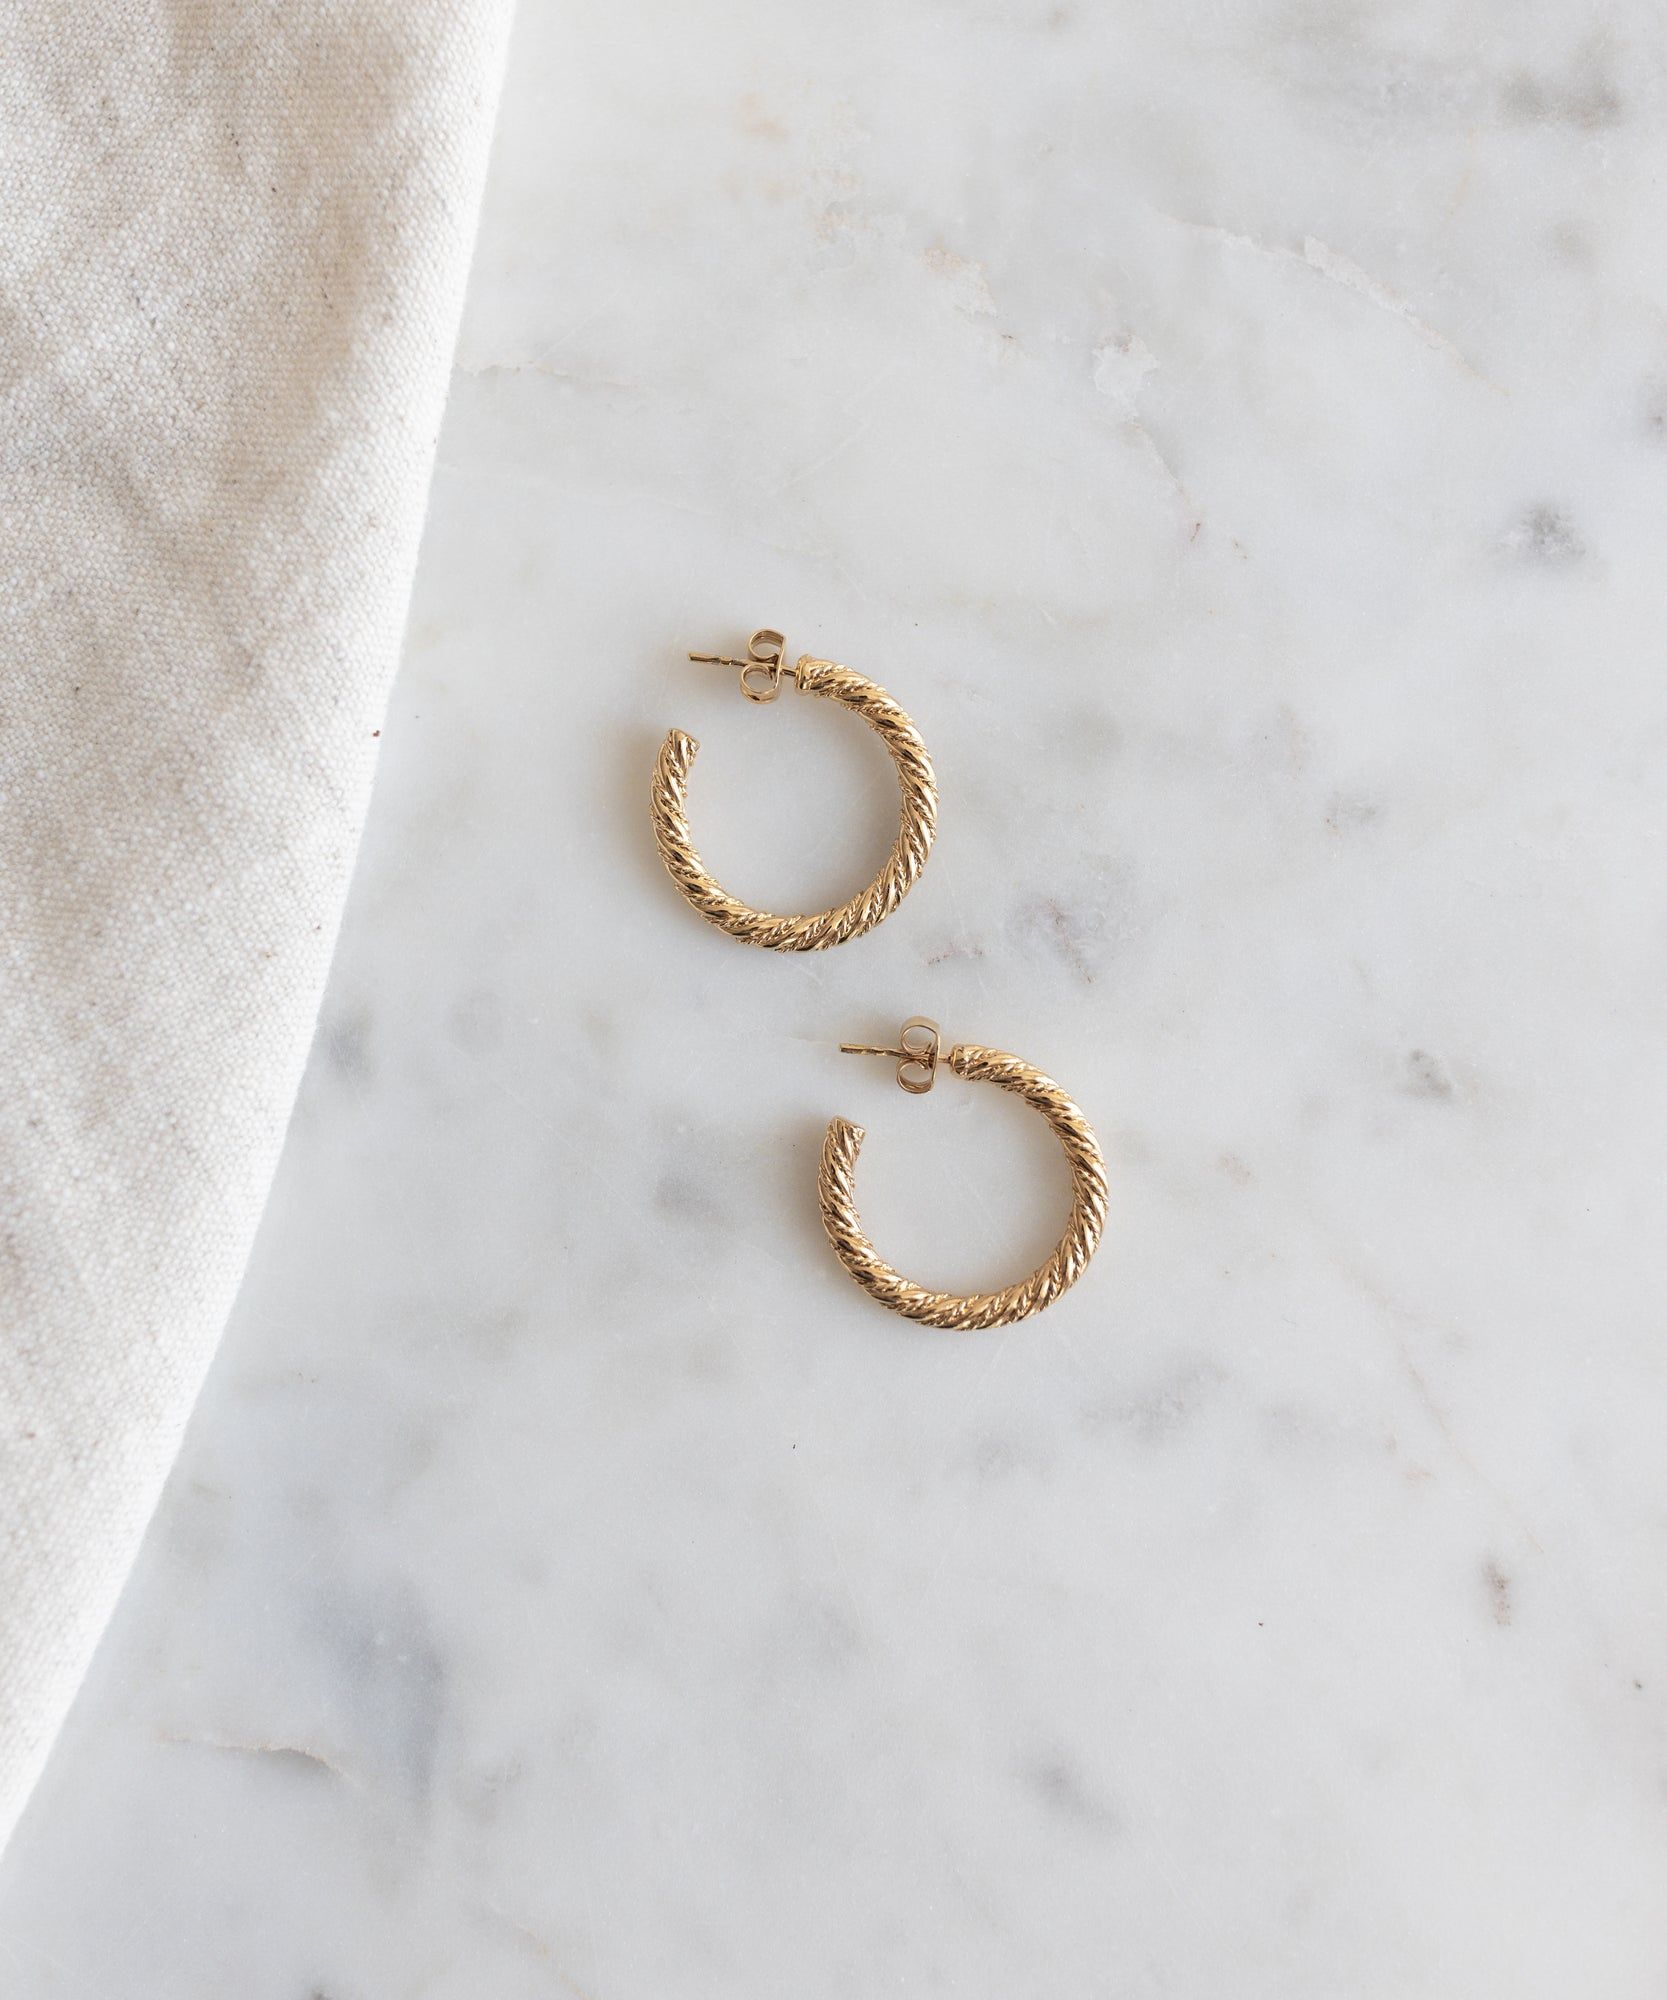 A pair of WALD Berlin Linda Earrings Gold Big hoop earrings on a marble table.